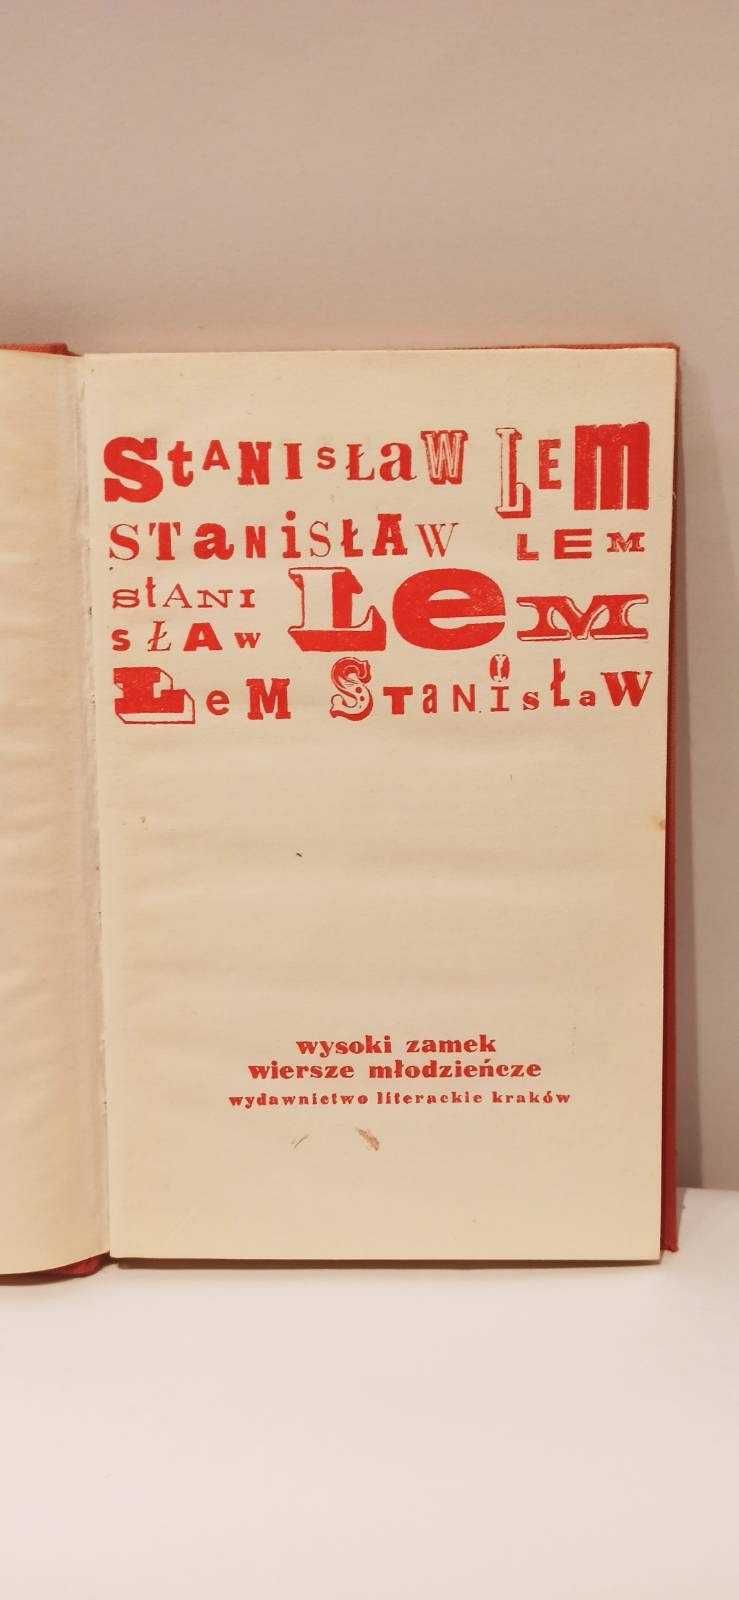 Stanisław Lem / wysoki zamek / wiersze młodzieńcze / 1975